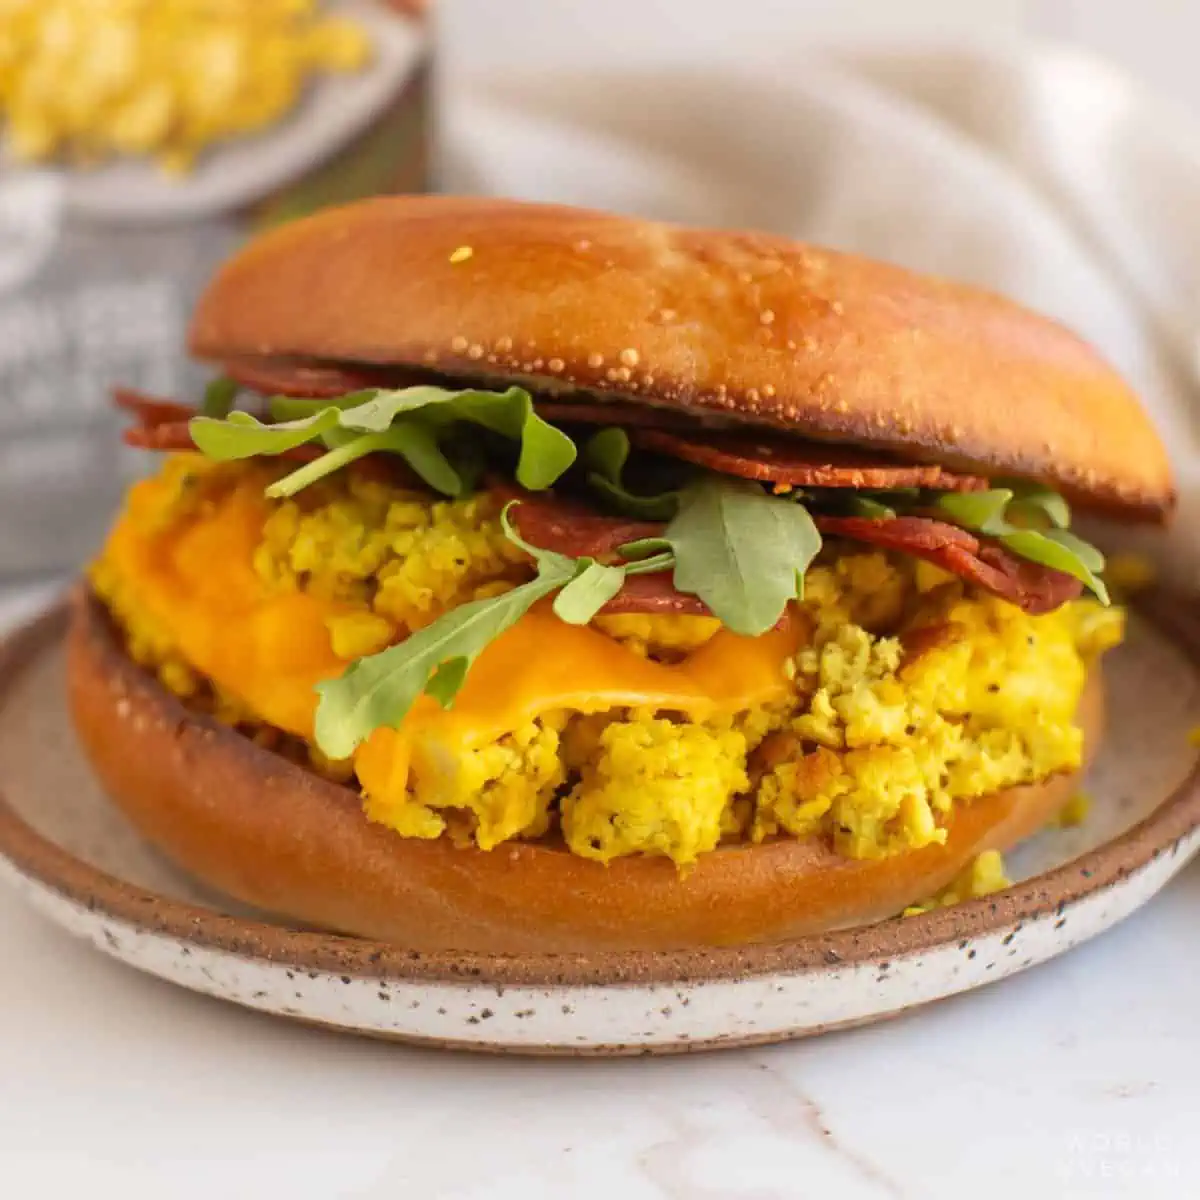 A vegan breakfast sandwich on a plate.